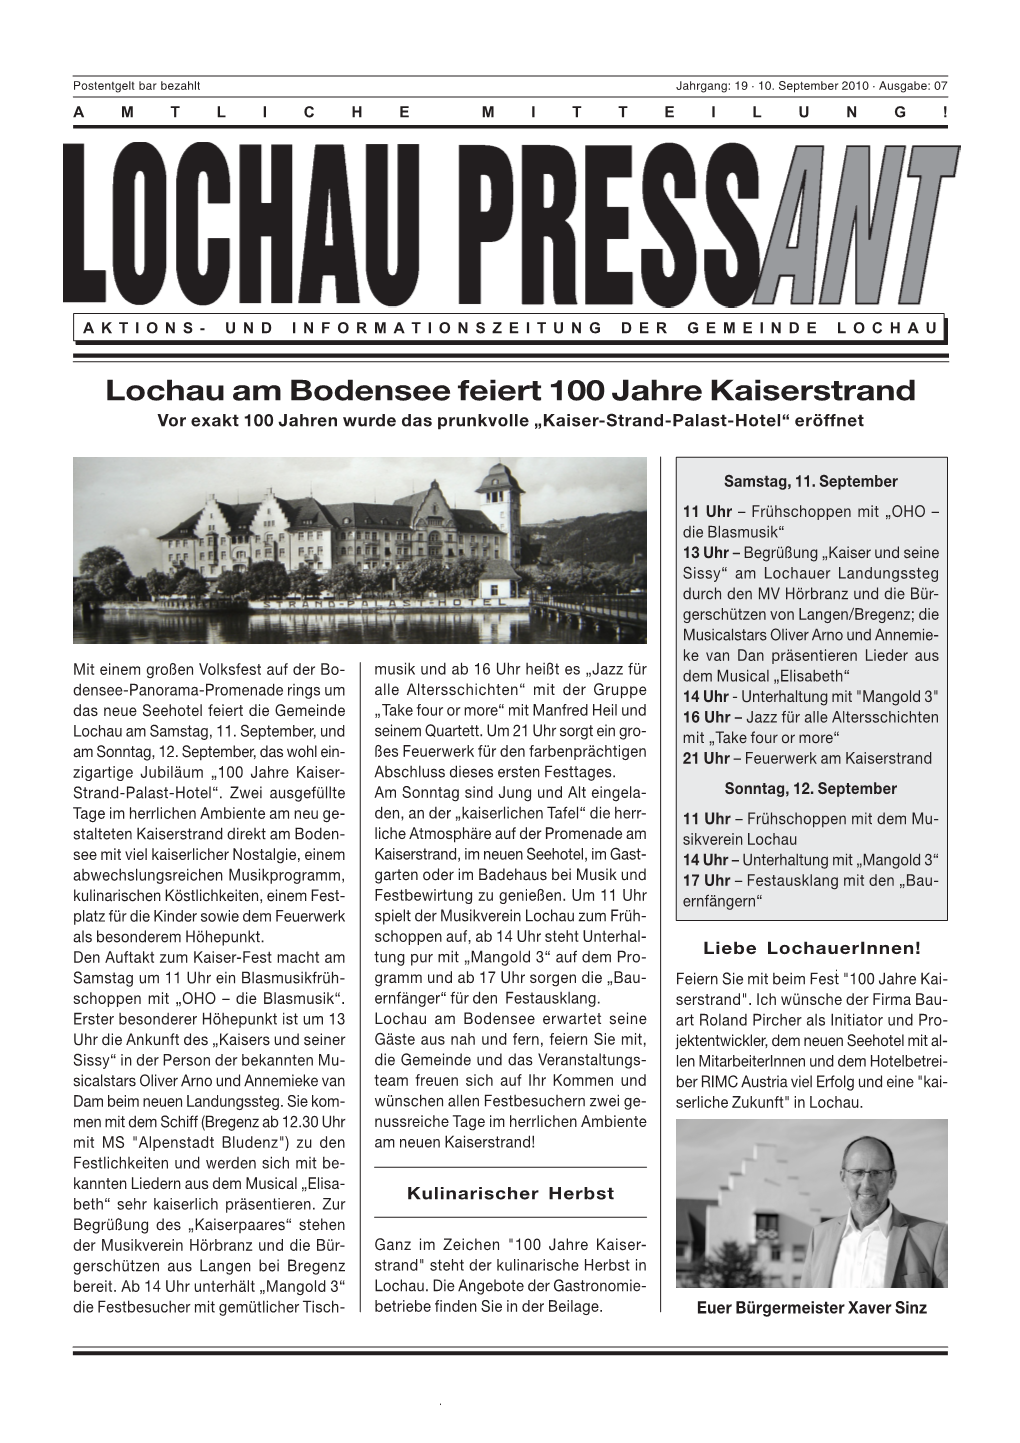 Lochau Am Bodensee Feiert 100 Jahre Kaiserstrand Vor Exakt 100 Jahren Wurde Das Prunkvolle „Kaiser-Strand-Palast-Hotel“ Eröffnet